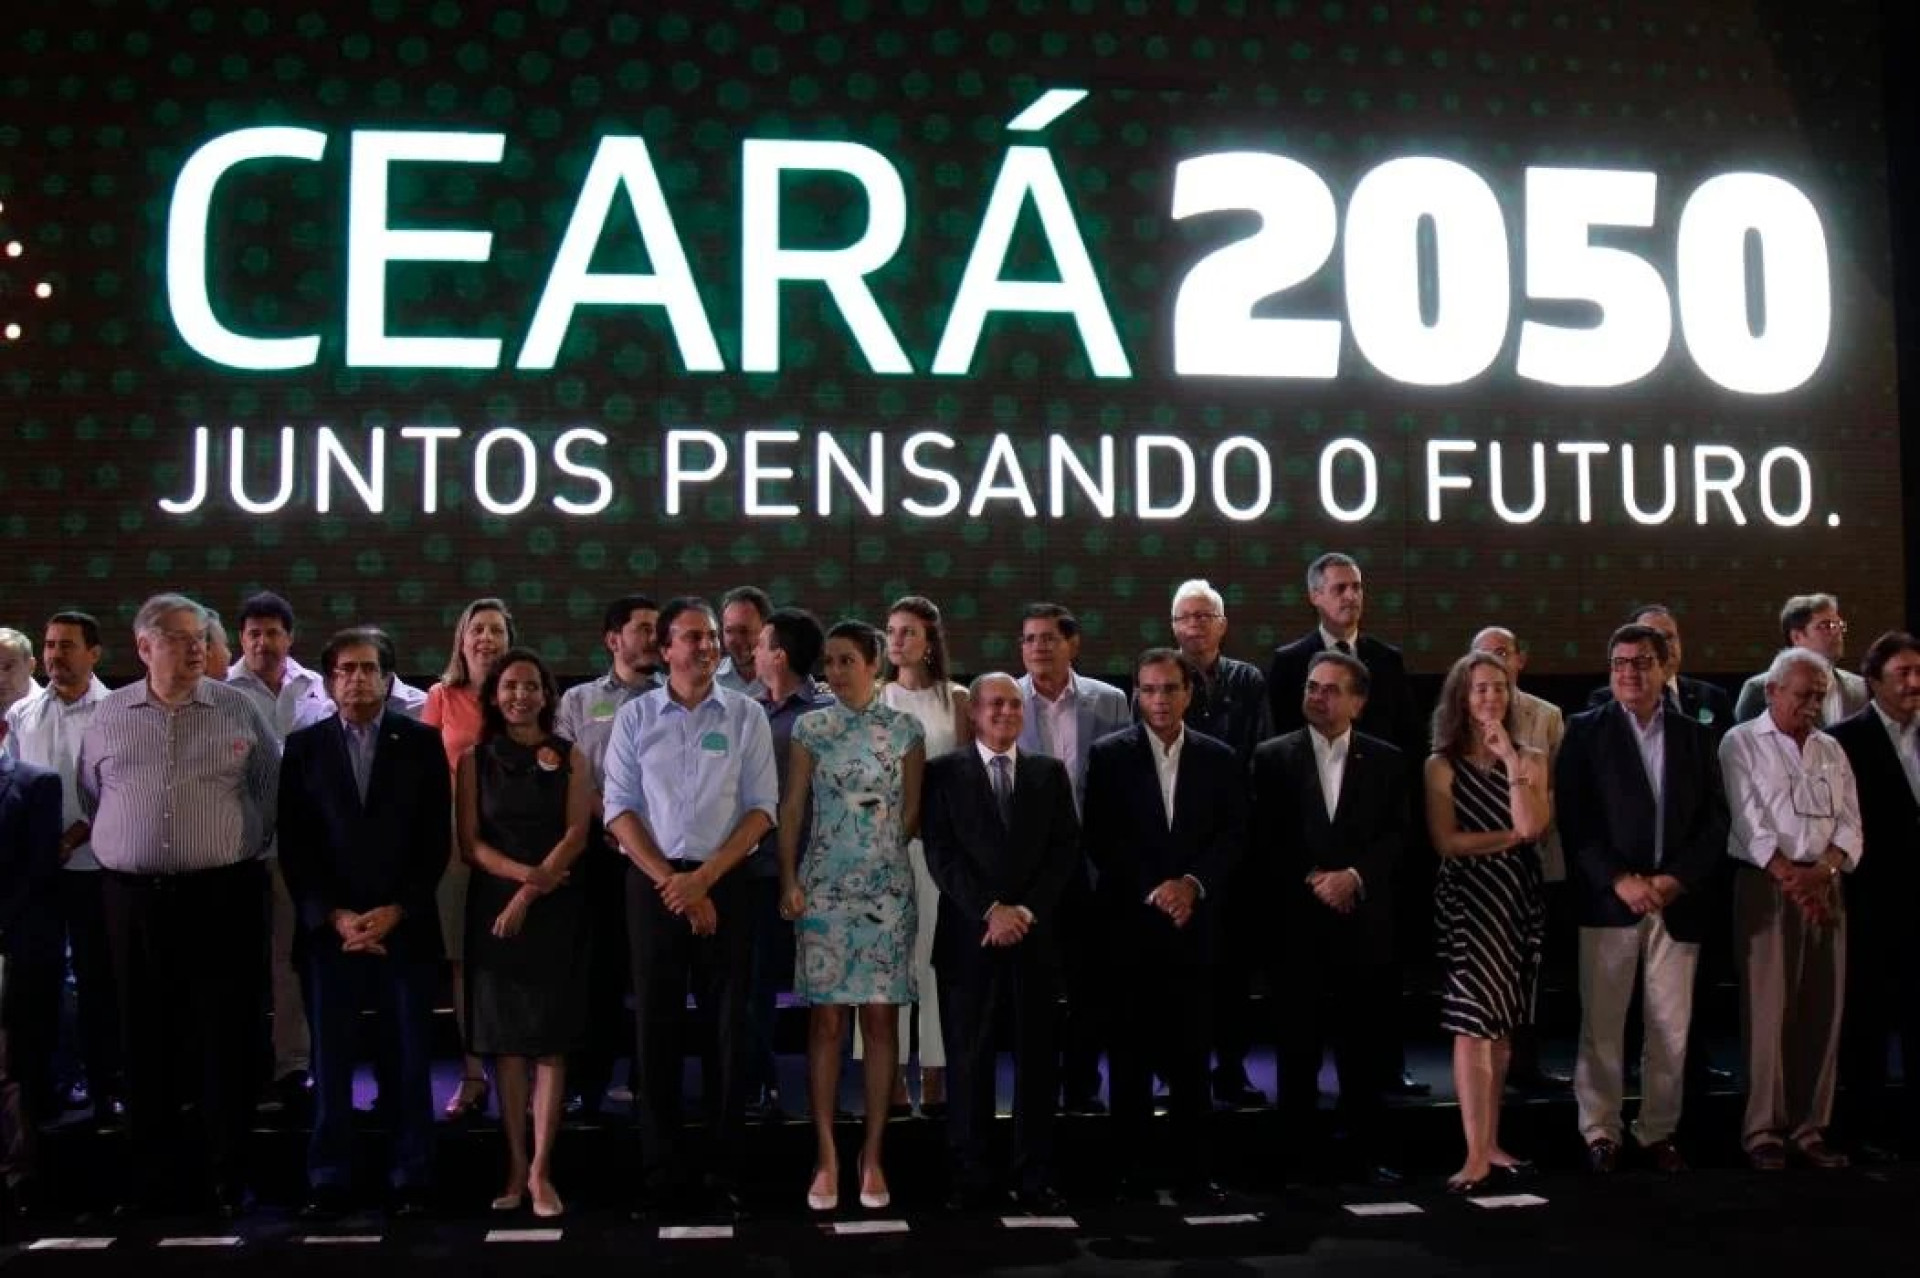 Ceará 2050 foi lançado na gestão Camilo Santana (Foto: Aurélio Alves)